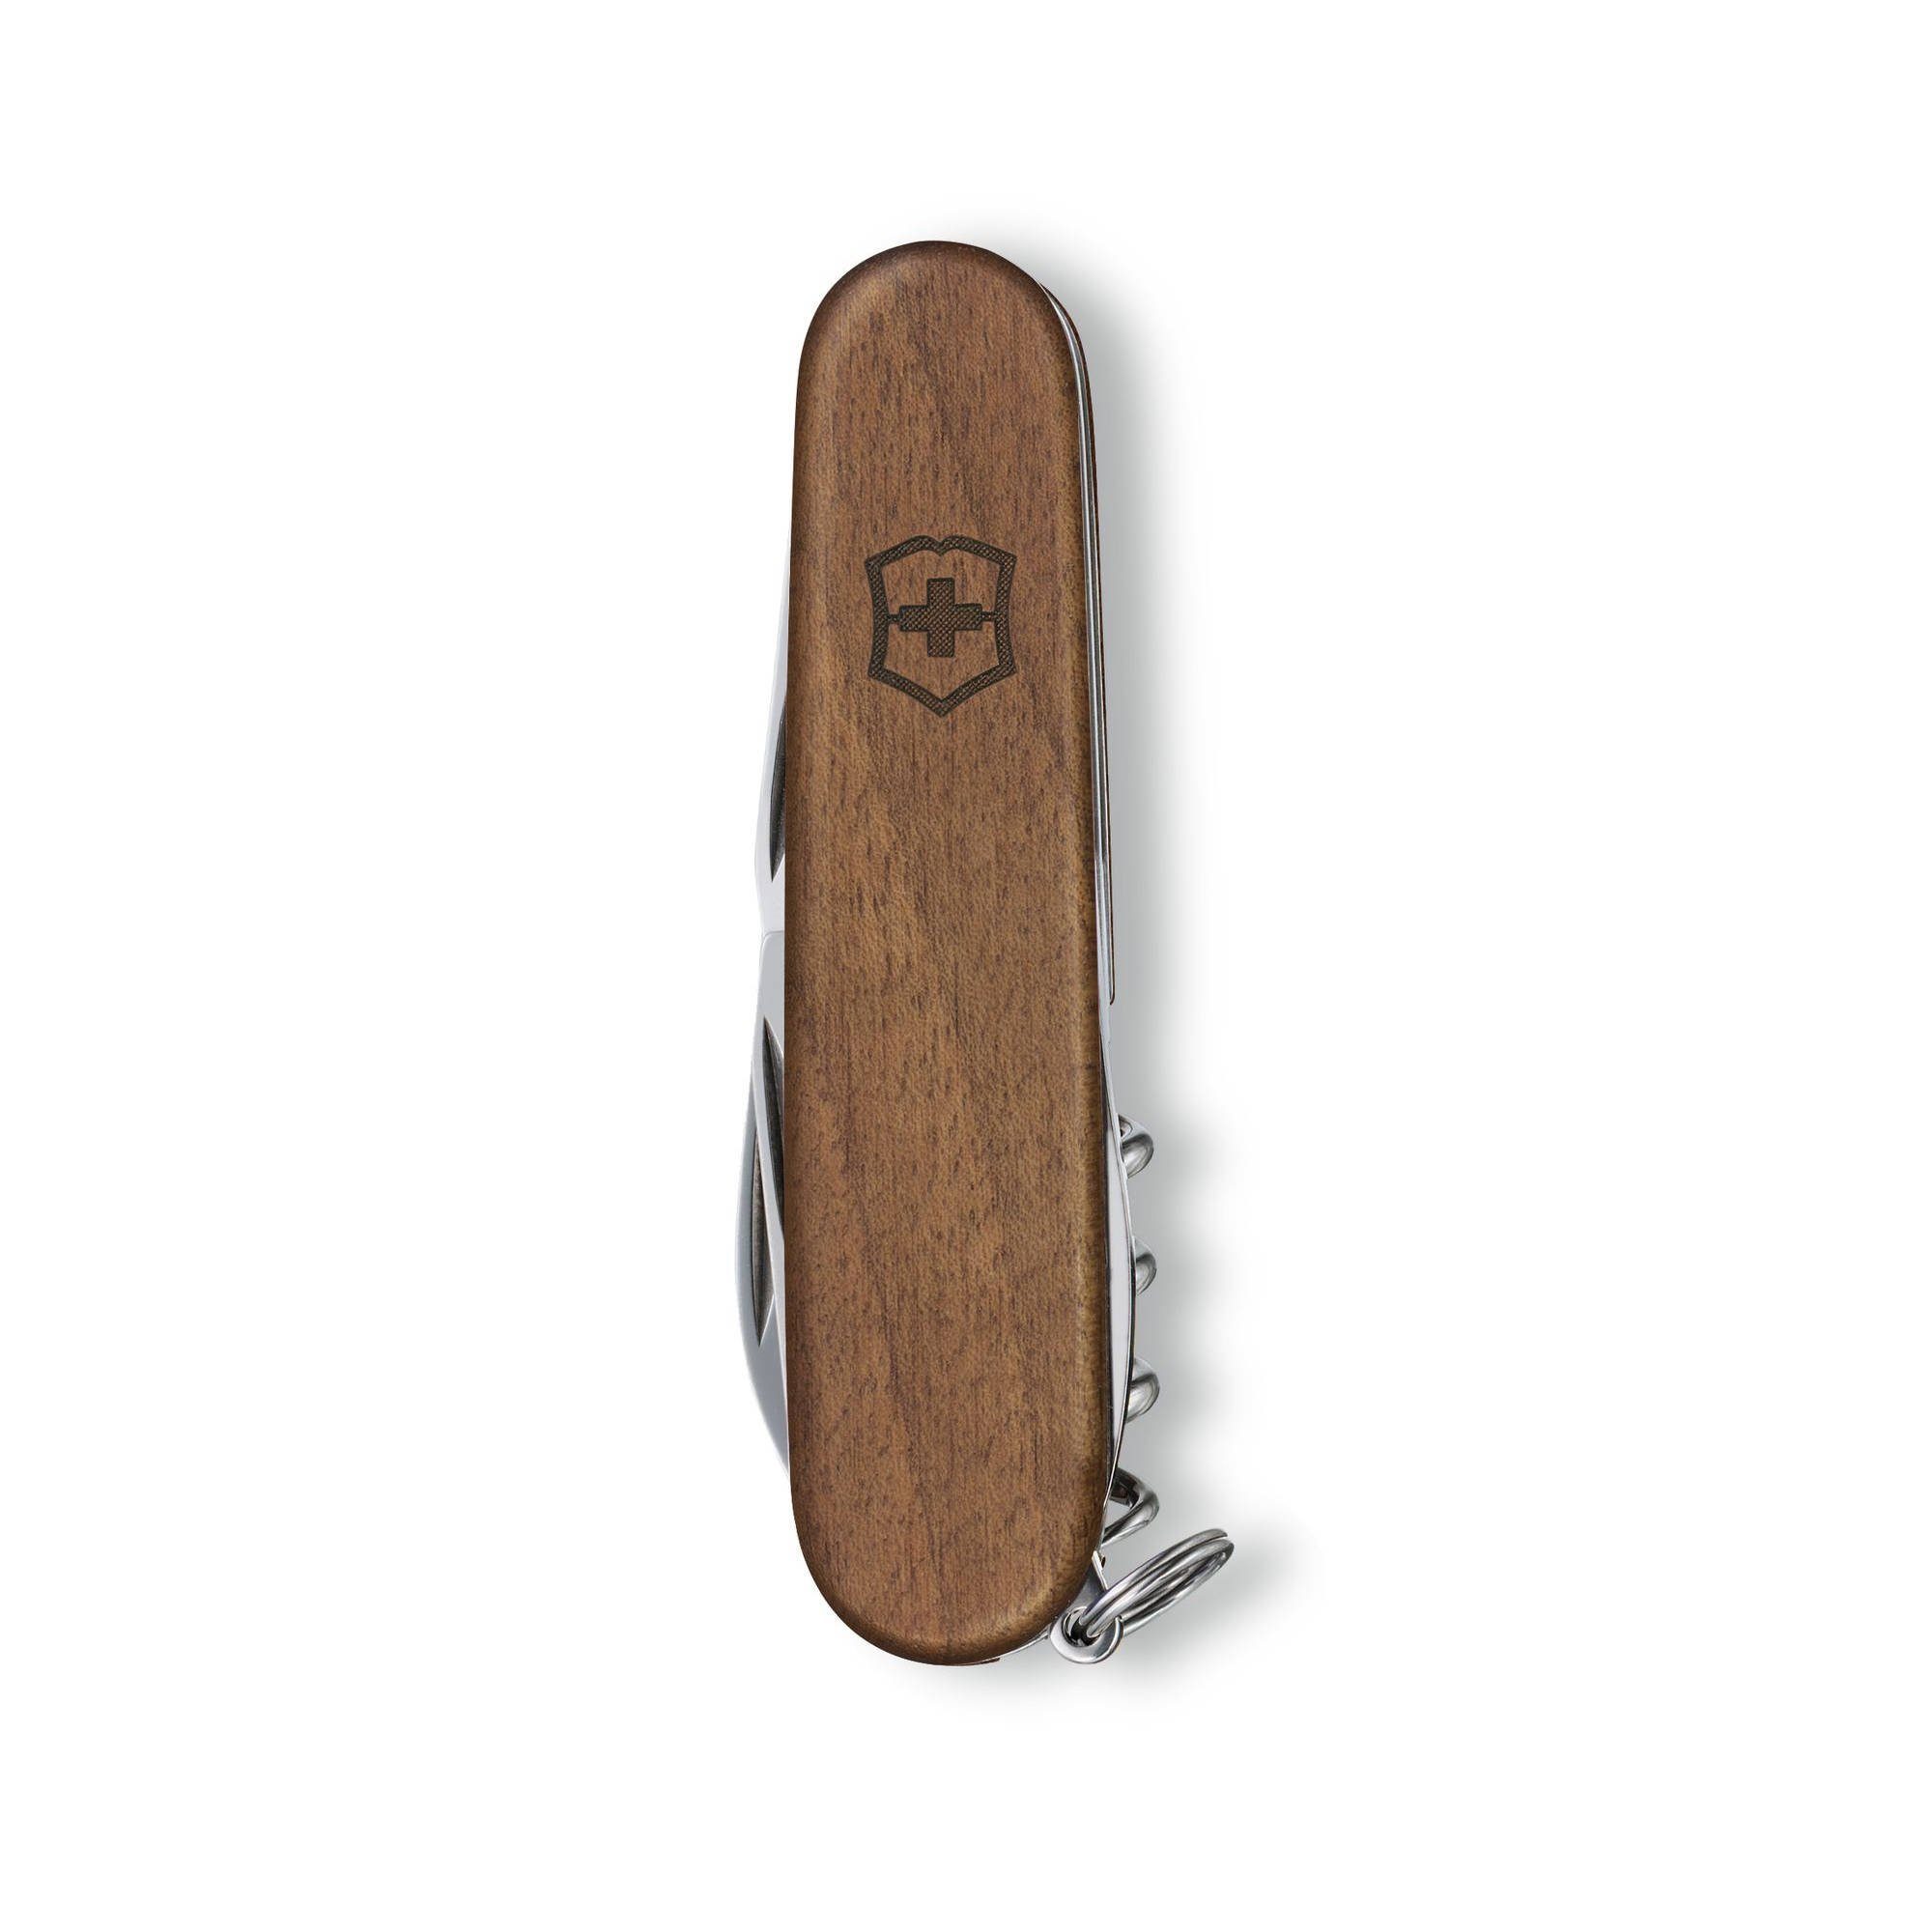 Nussbaumholz Wood Funktionen Taschenmesser 1.3601.63 10 Spartan Victorinox